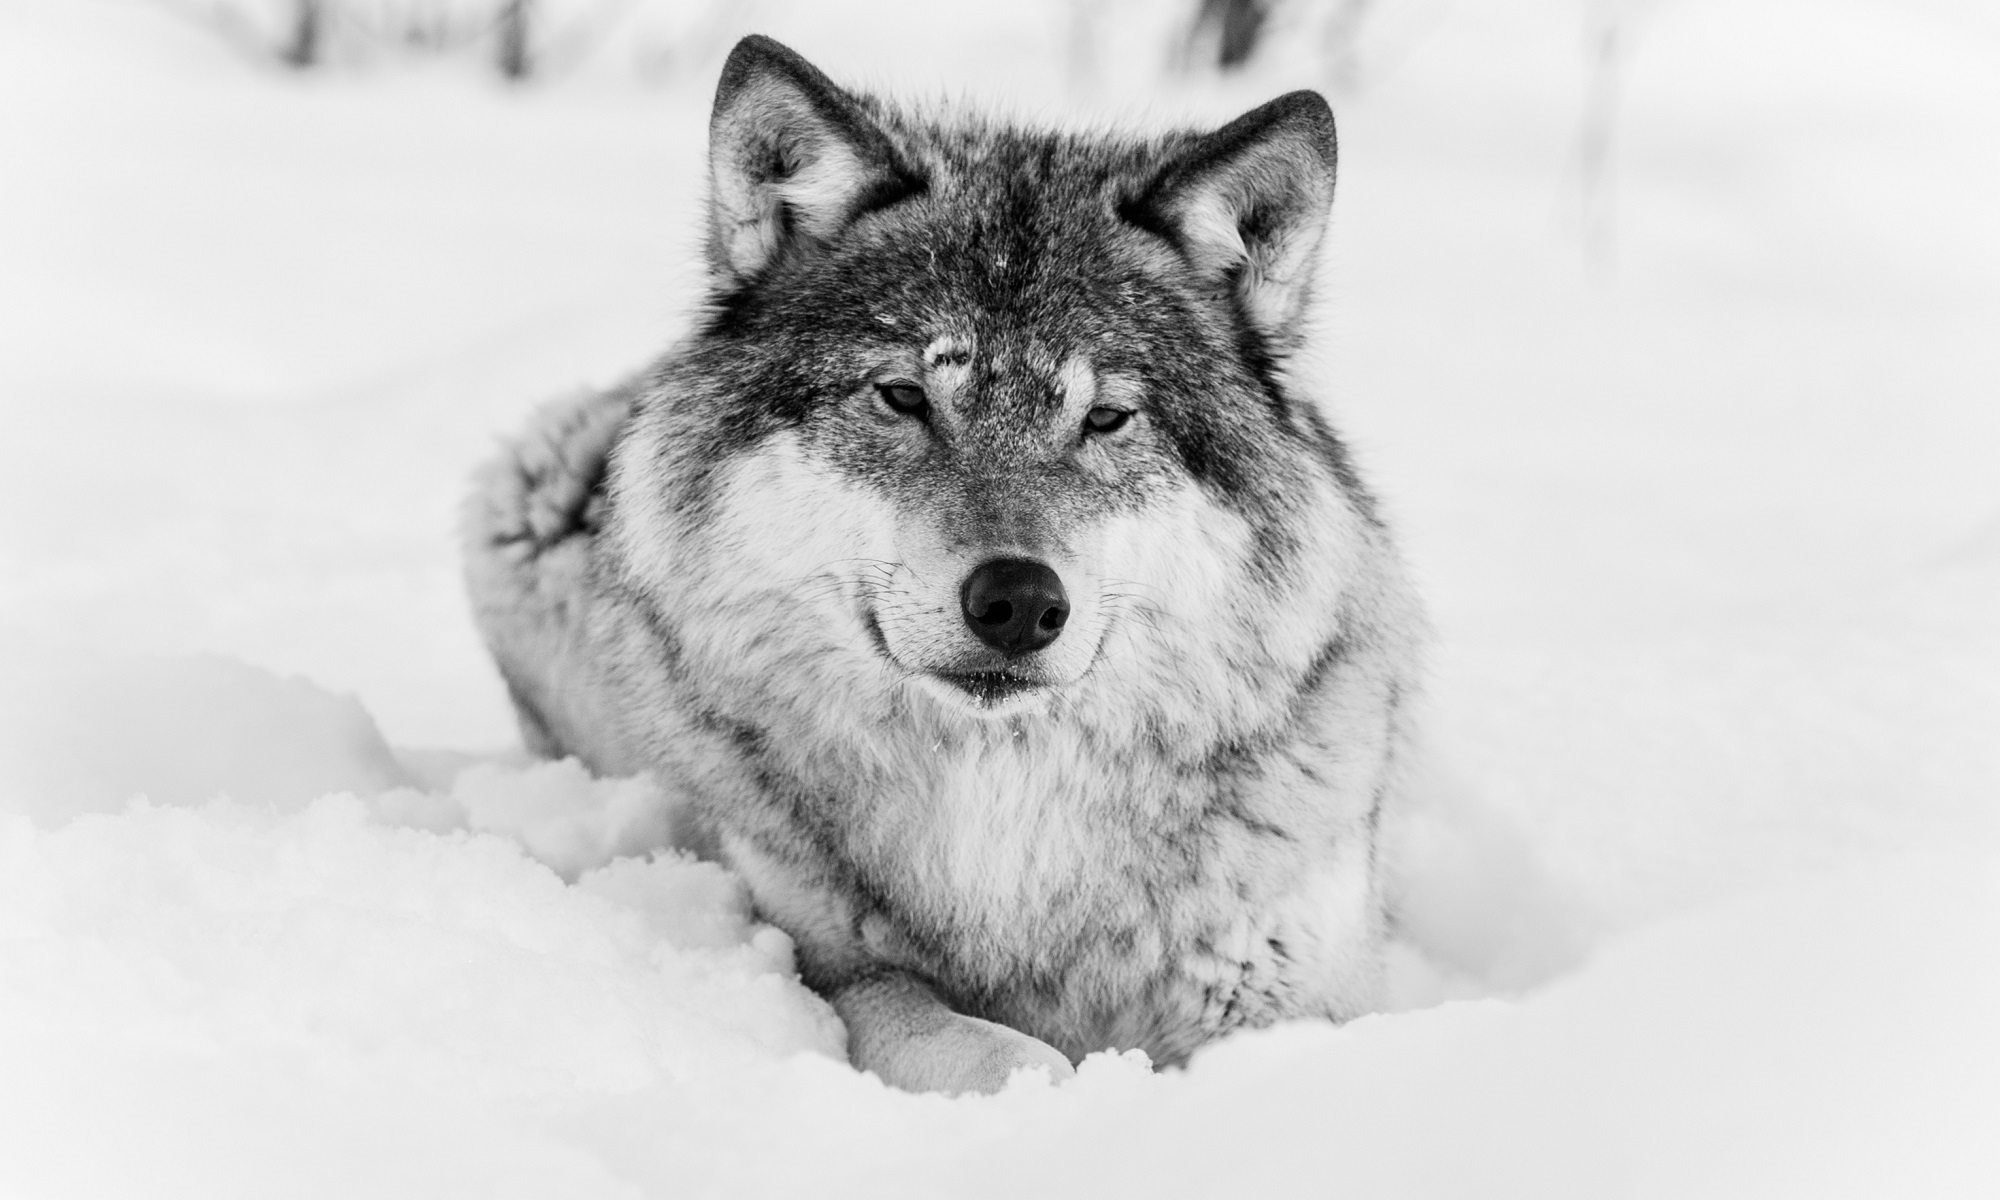 Fondos de Pantalla Lobo Nieve Animalia descargar imagenes